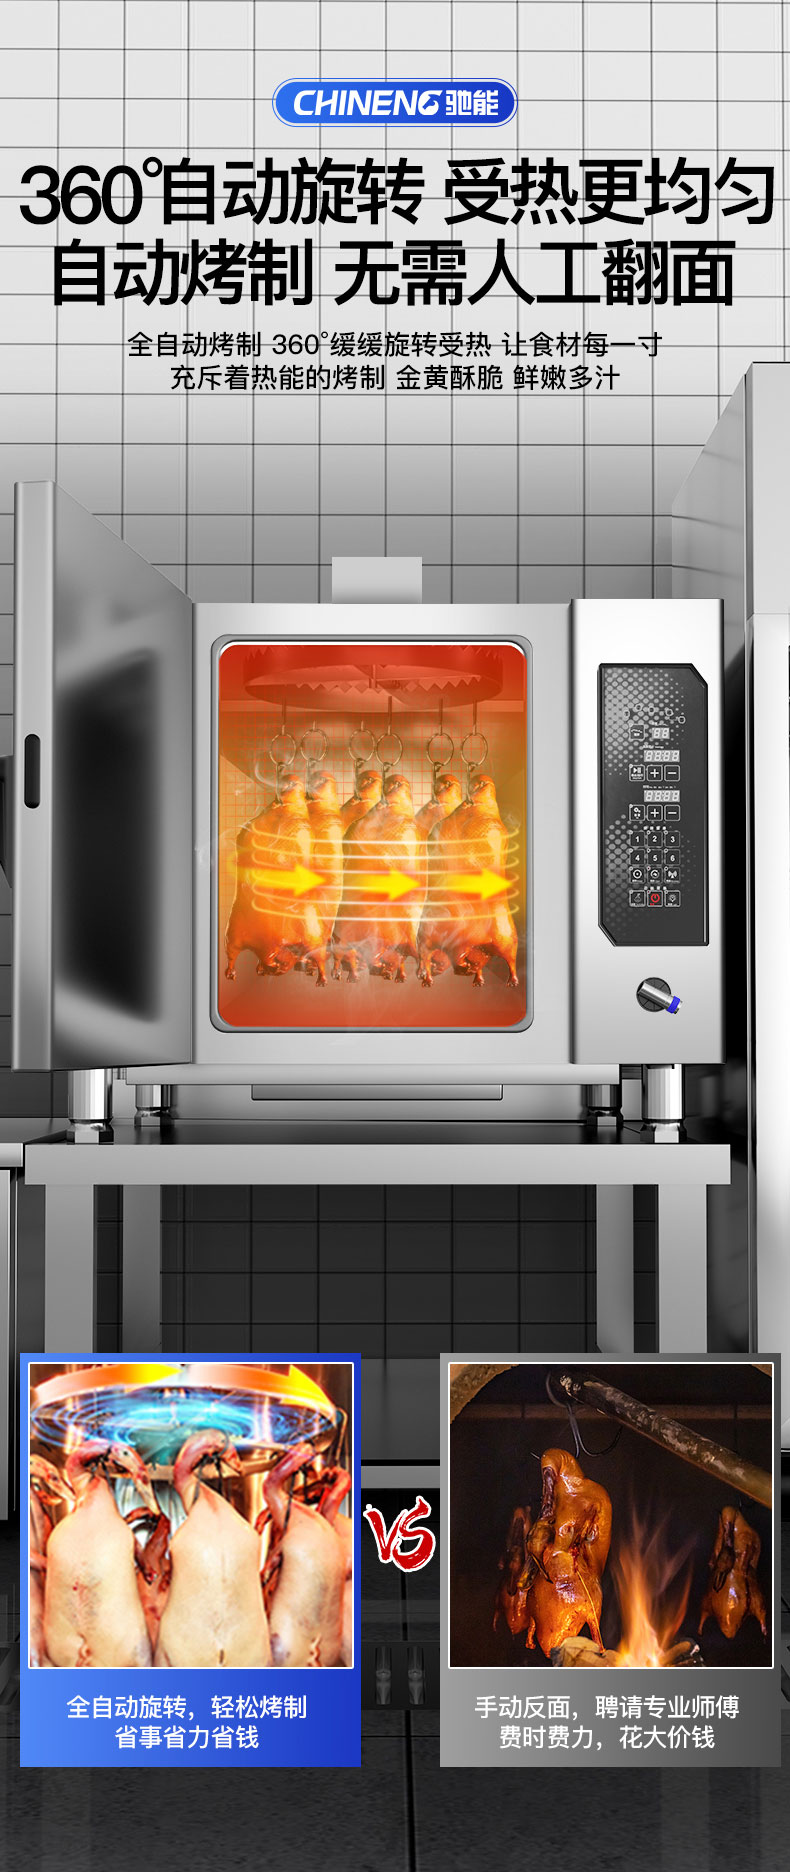 烤鸭炉自动烤制功能